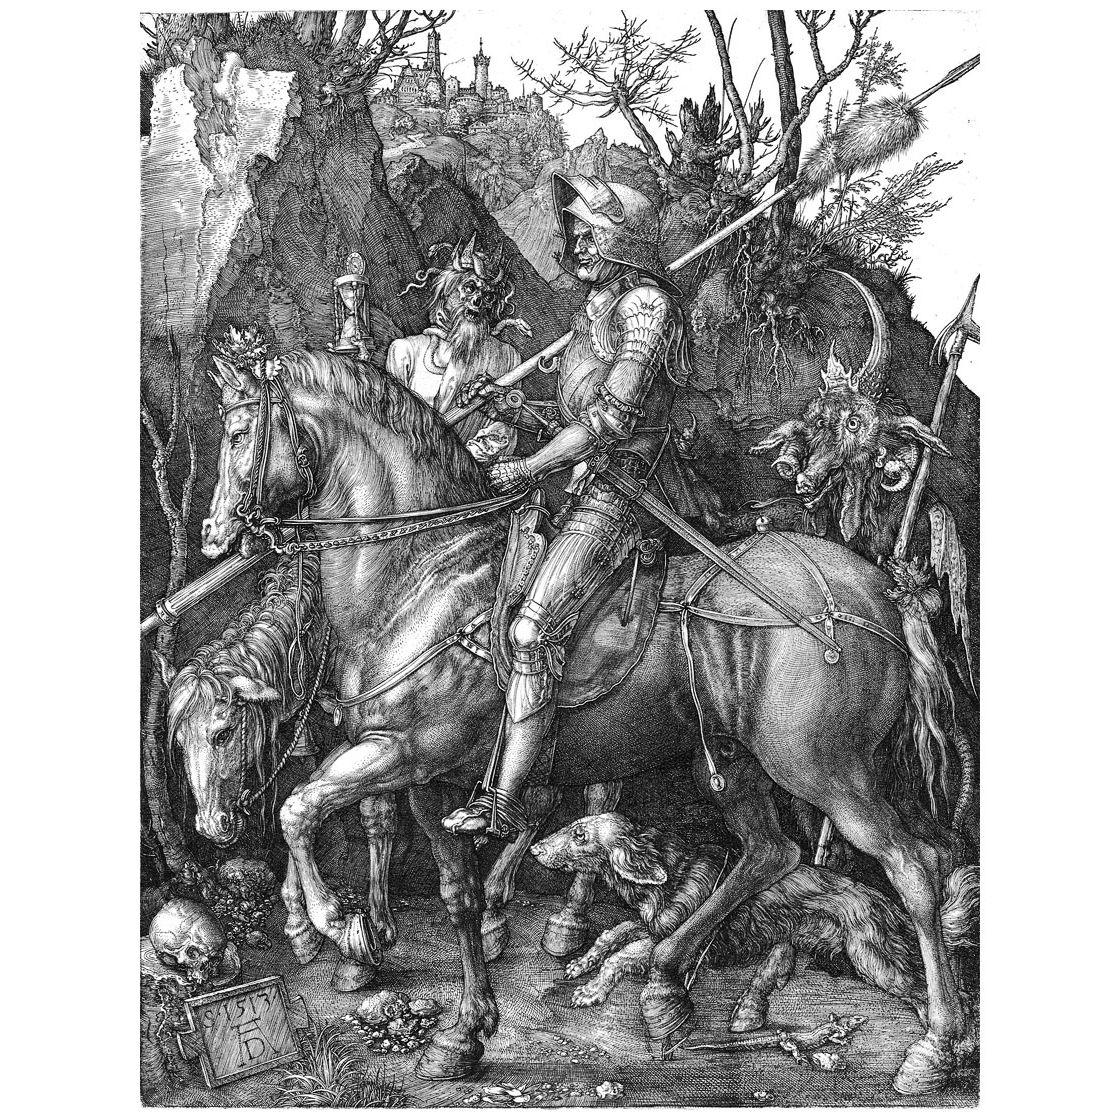 Albrecht Durer. Knight, Death and the Devil. 1513. Boijmans Van Beuningen Rotterdam